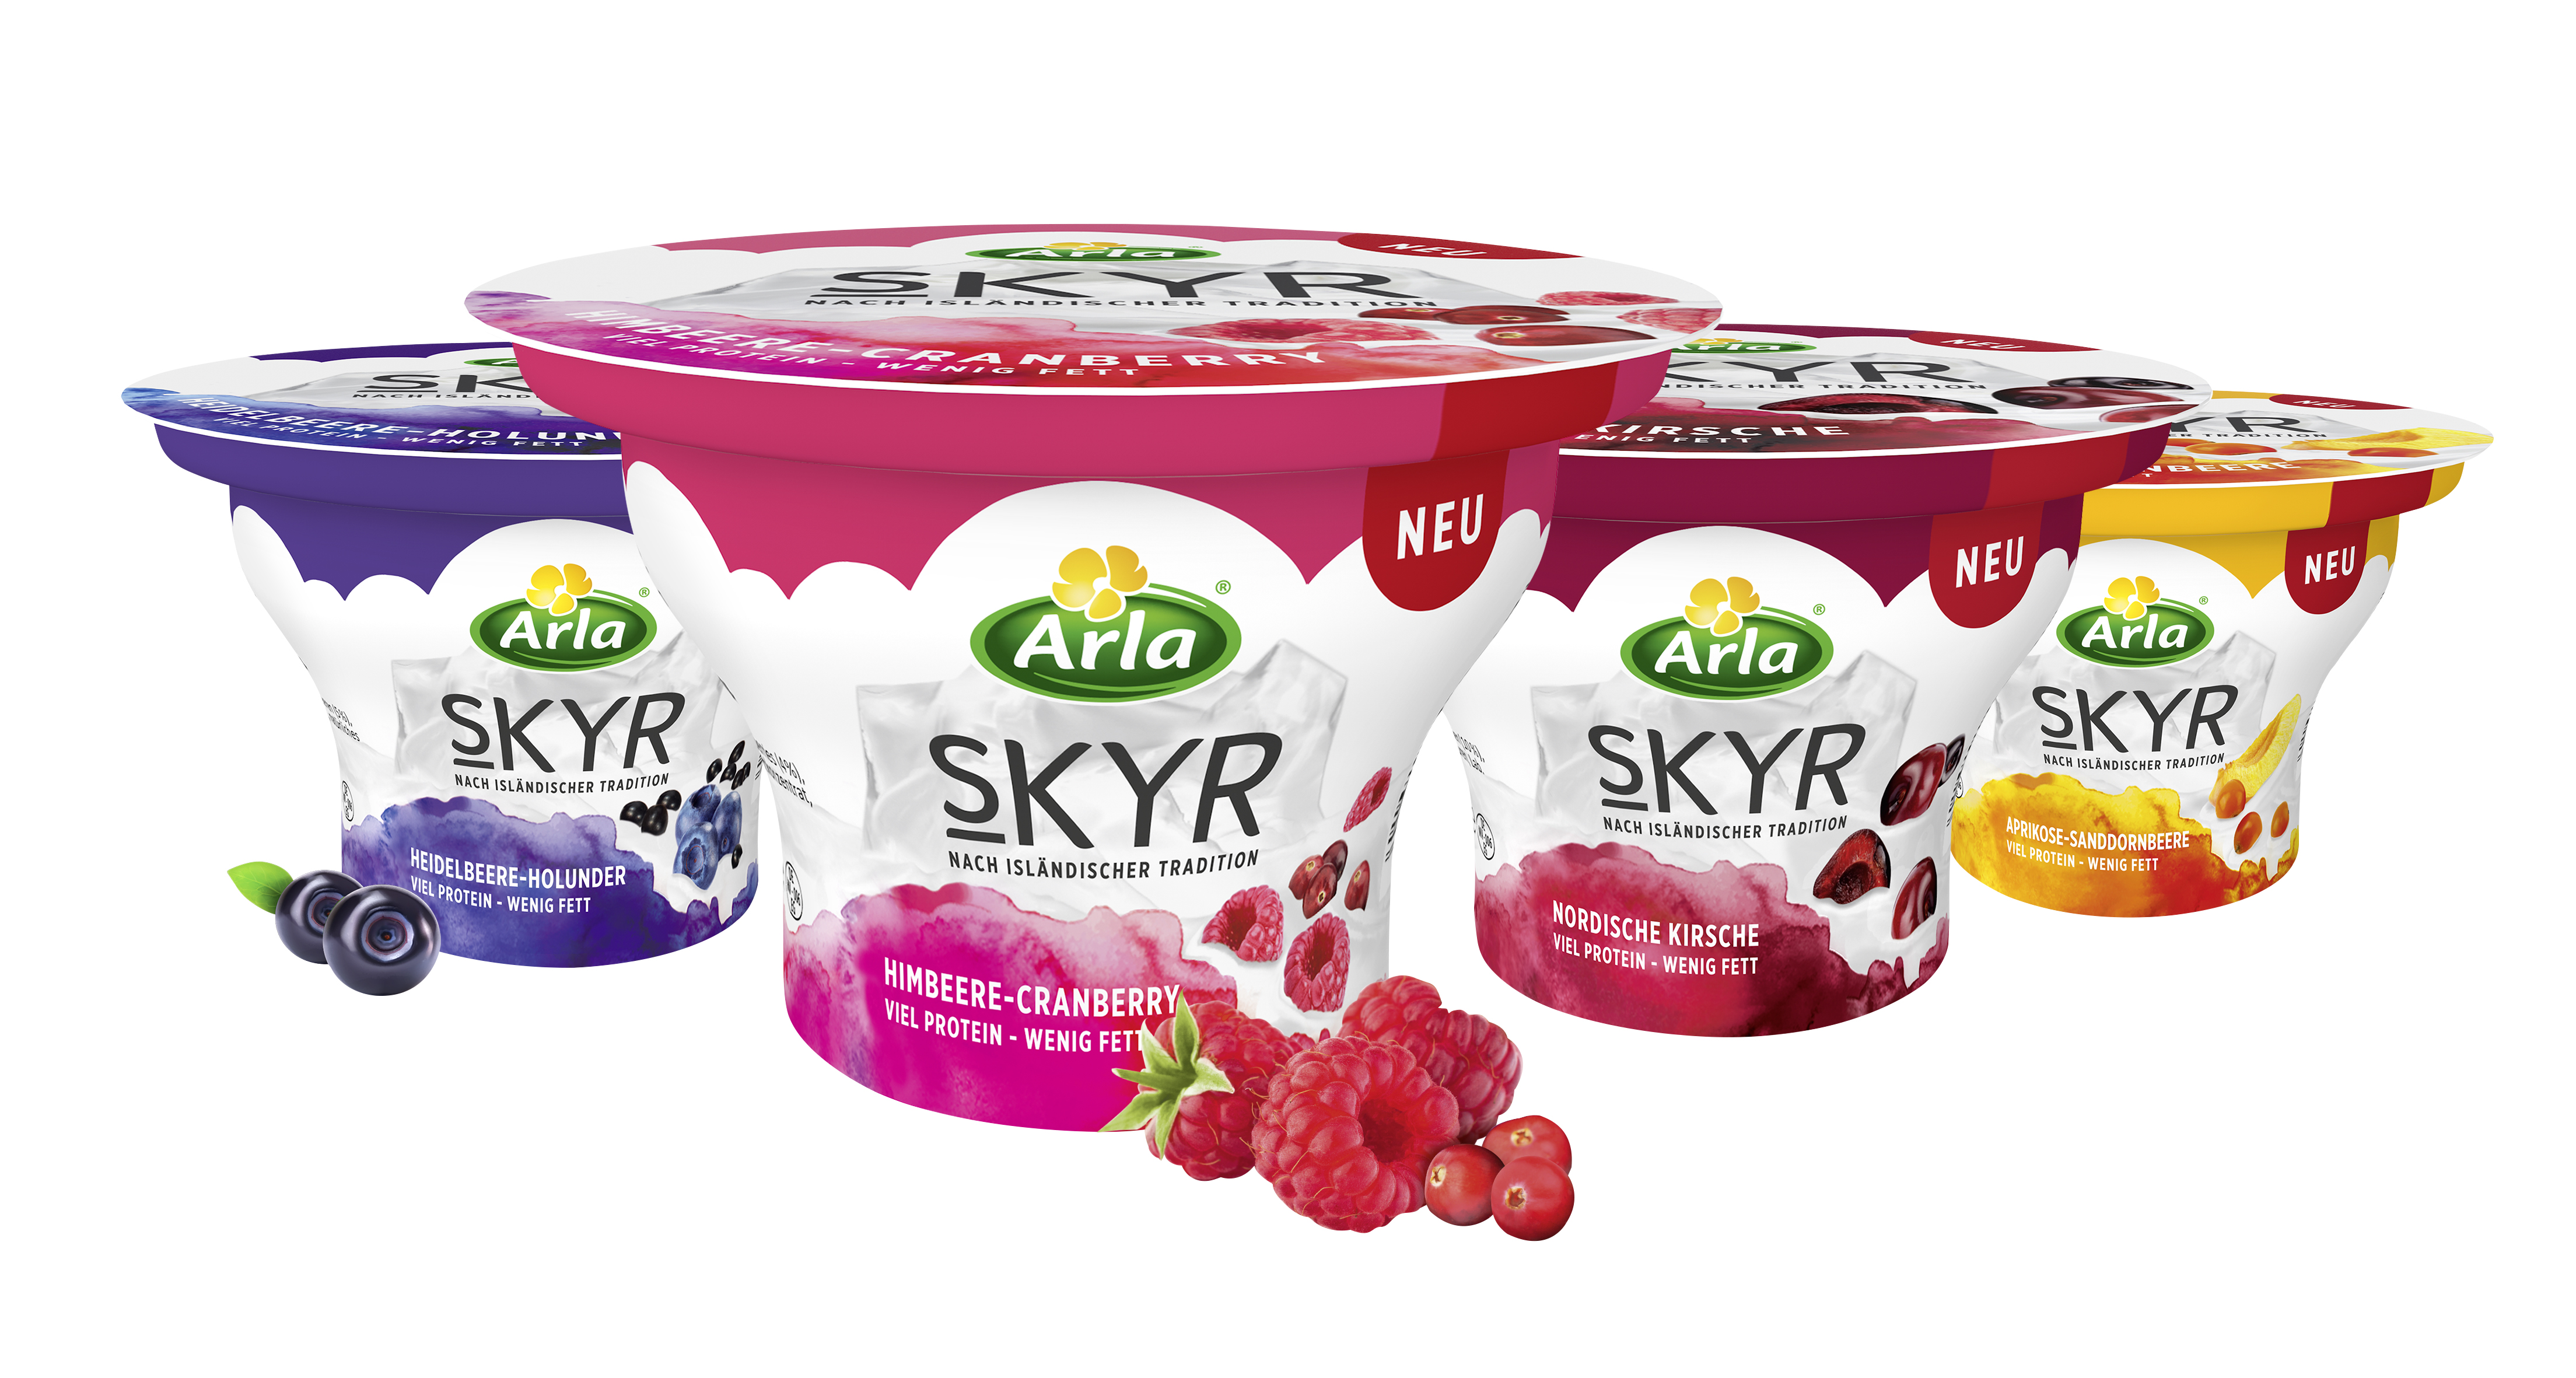 Als besodneren Erfolg des vergangenen Jahres sieht Arla die Einführung von Arla Skyr in Deutschland. Foto: Arla Foods